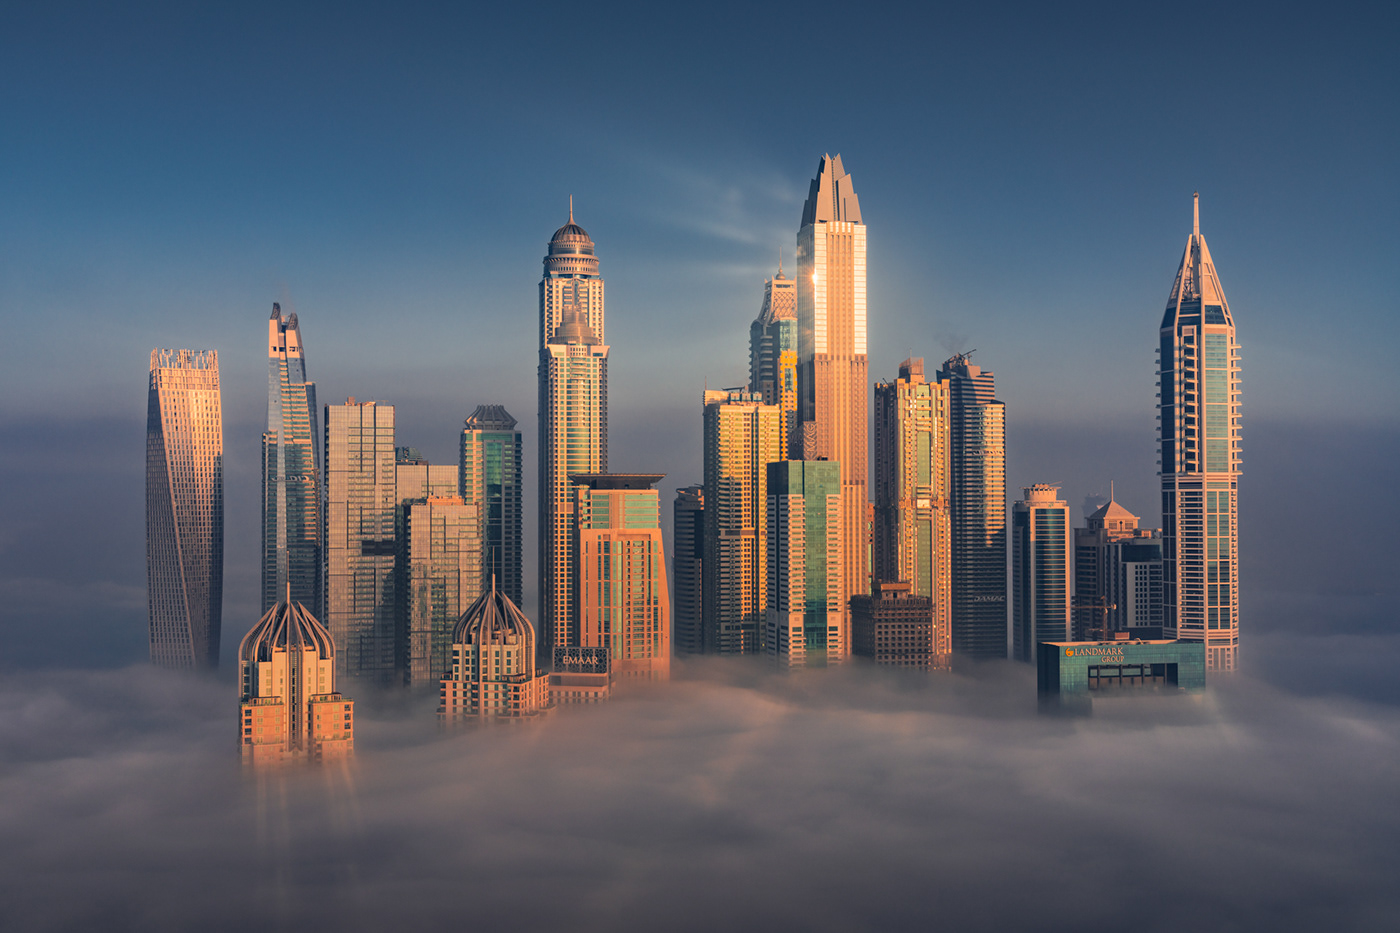 city clouds dubai futuristic mist sci-fi skyline skyscrapers